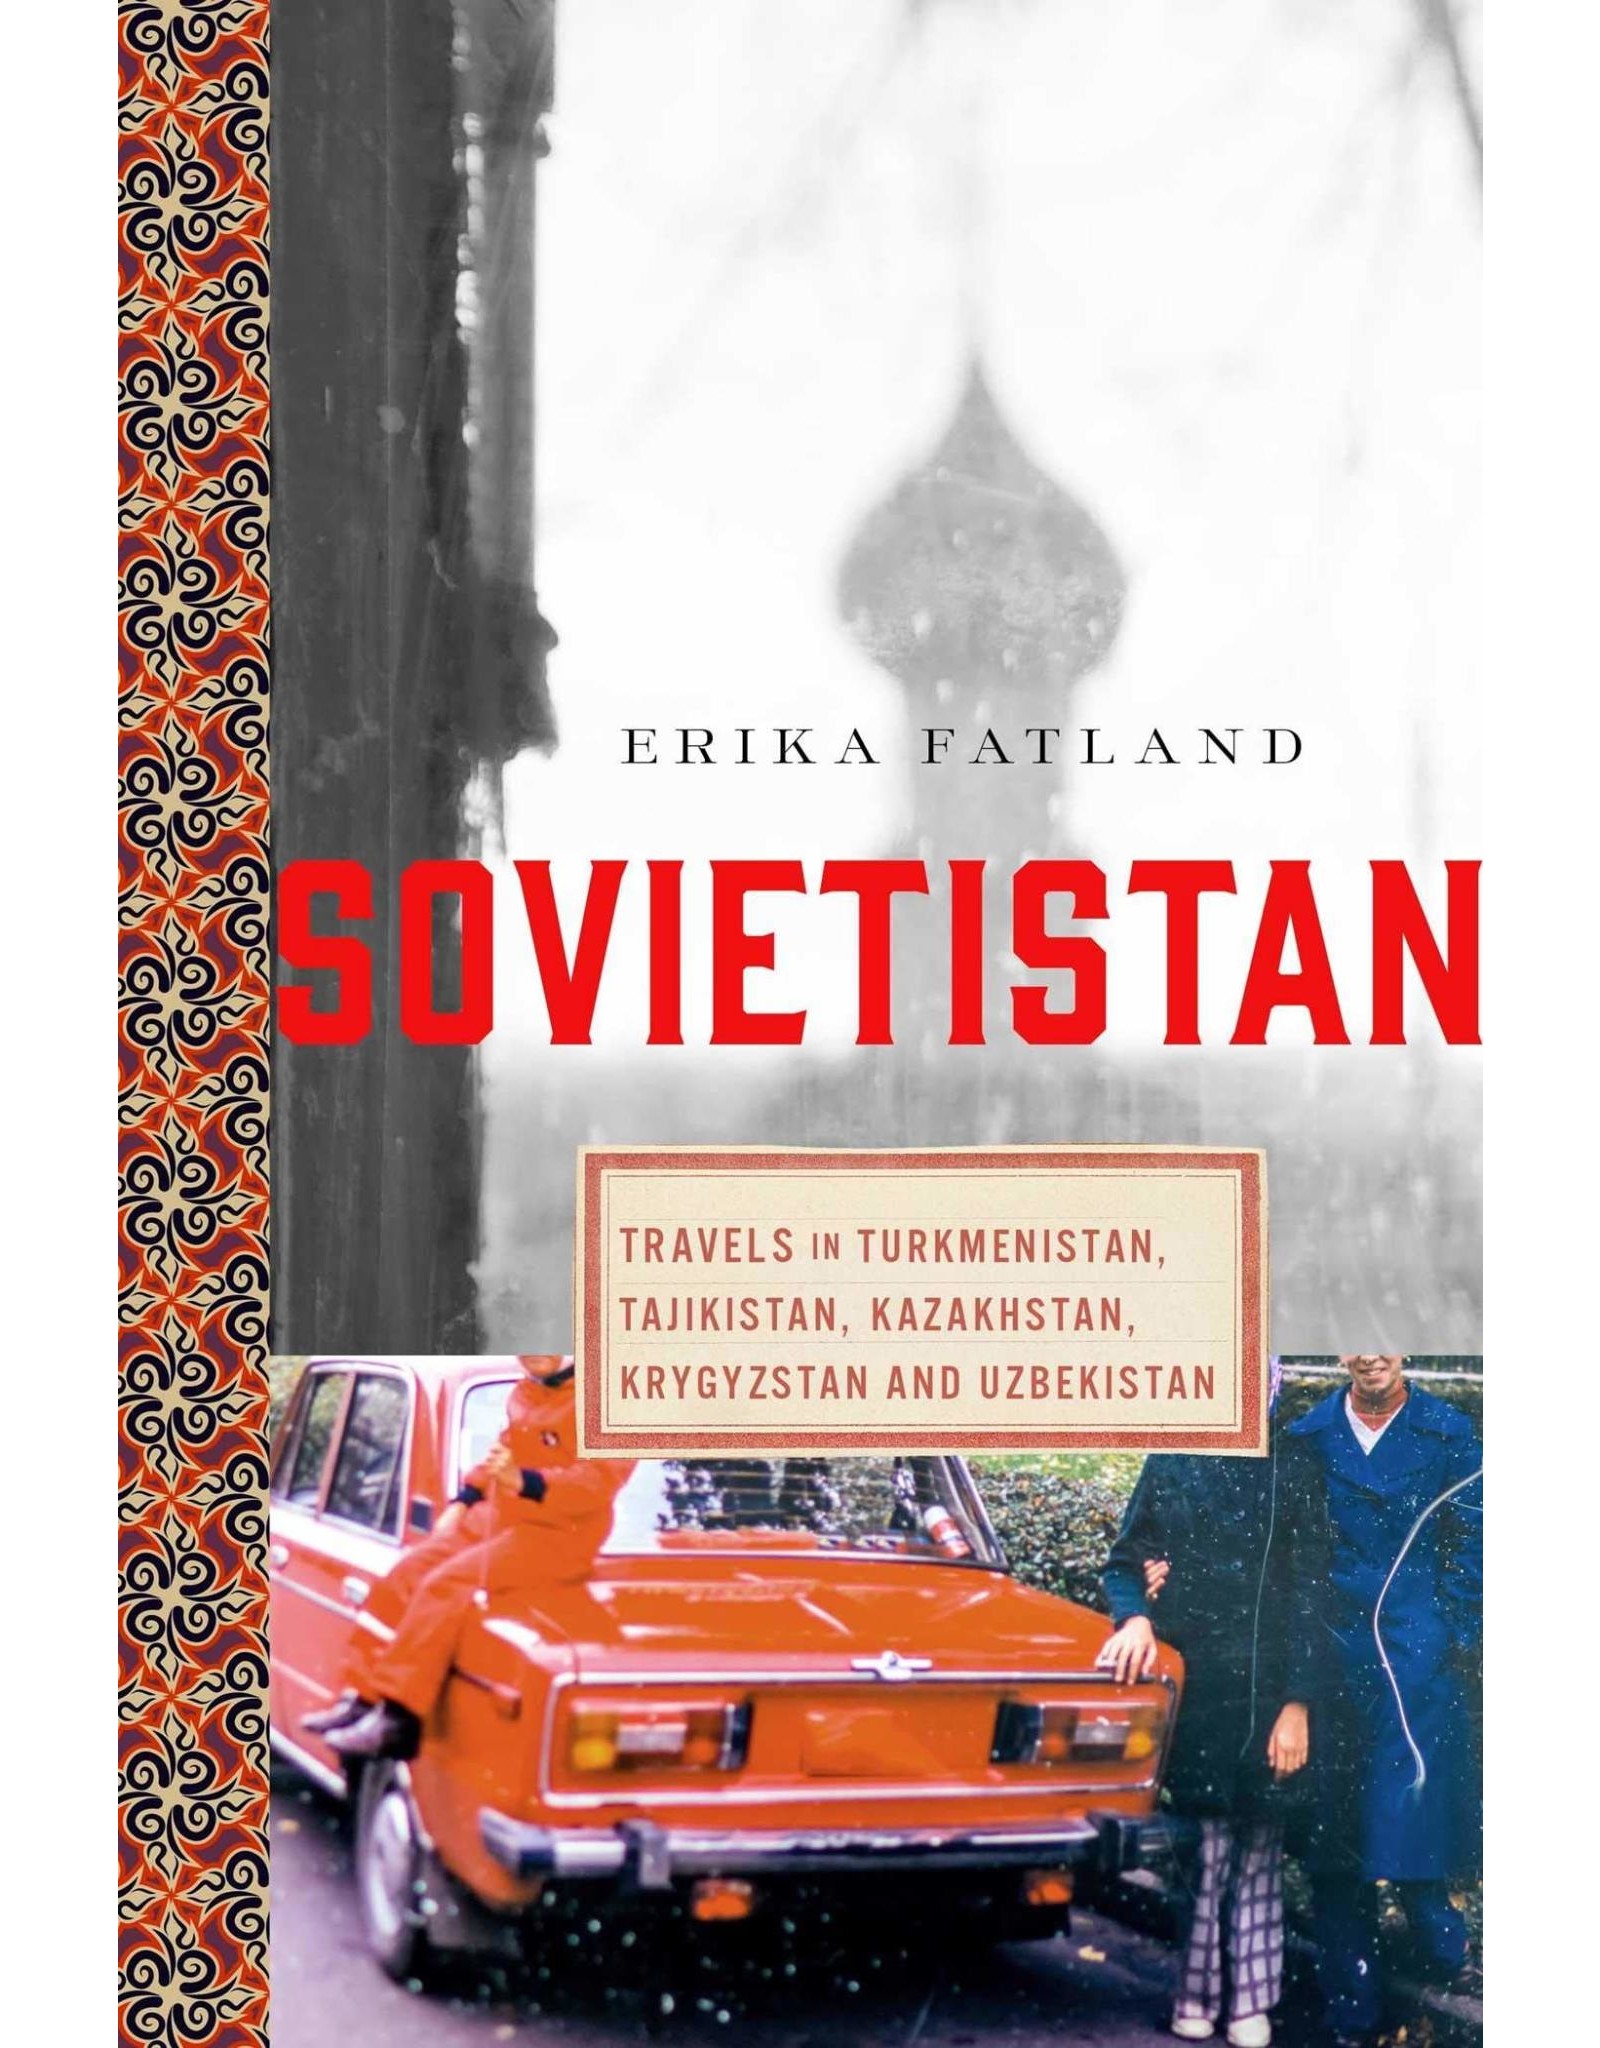 Sovietistan: Travels in Turkmenistan, Tajikistan, Kazakhstan, Kyrgyzstan and Uzbekistan